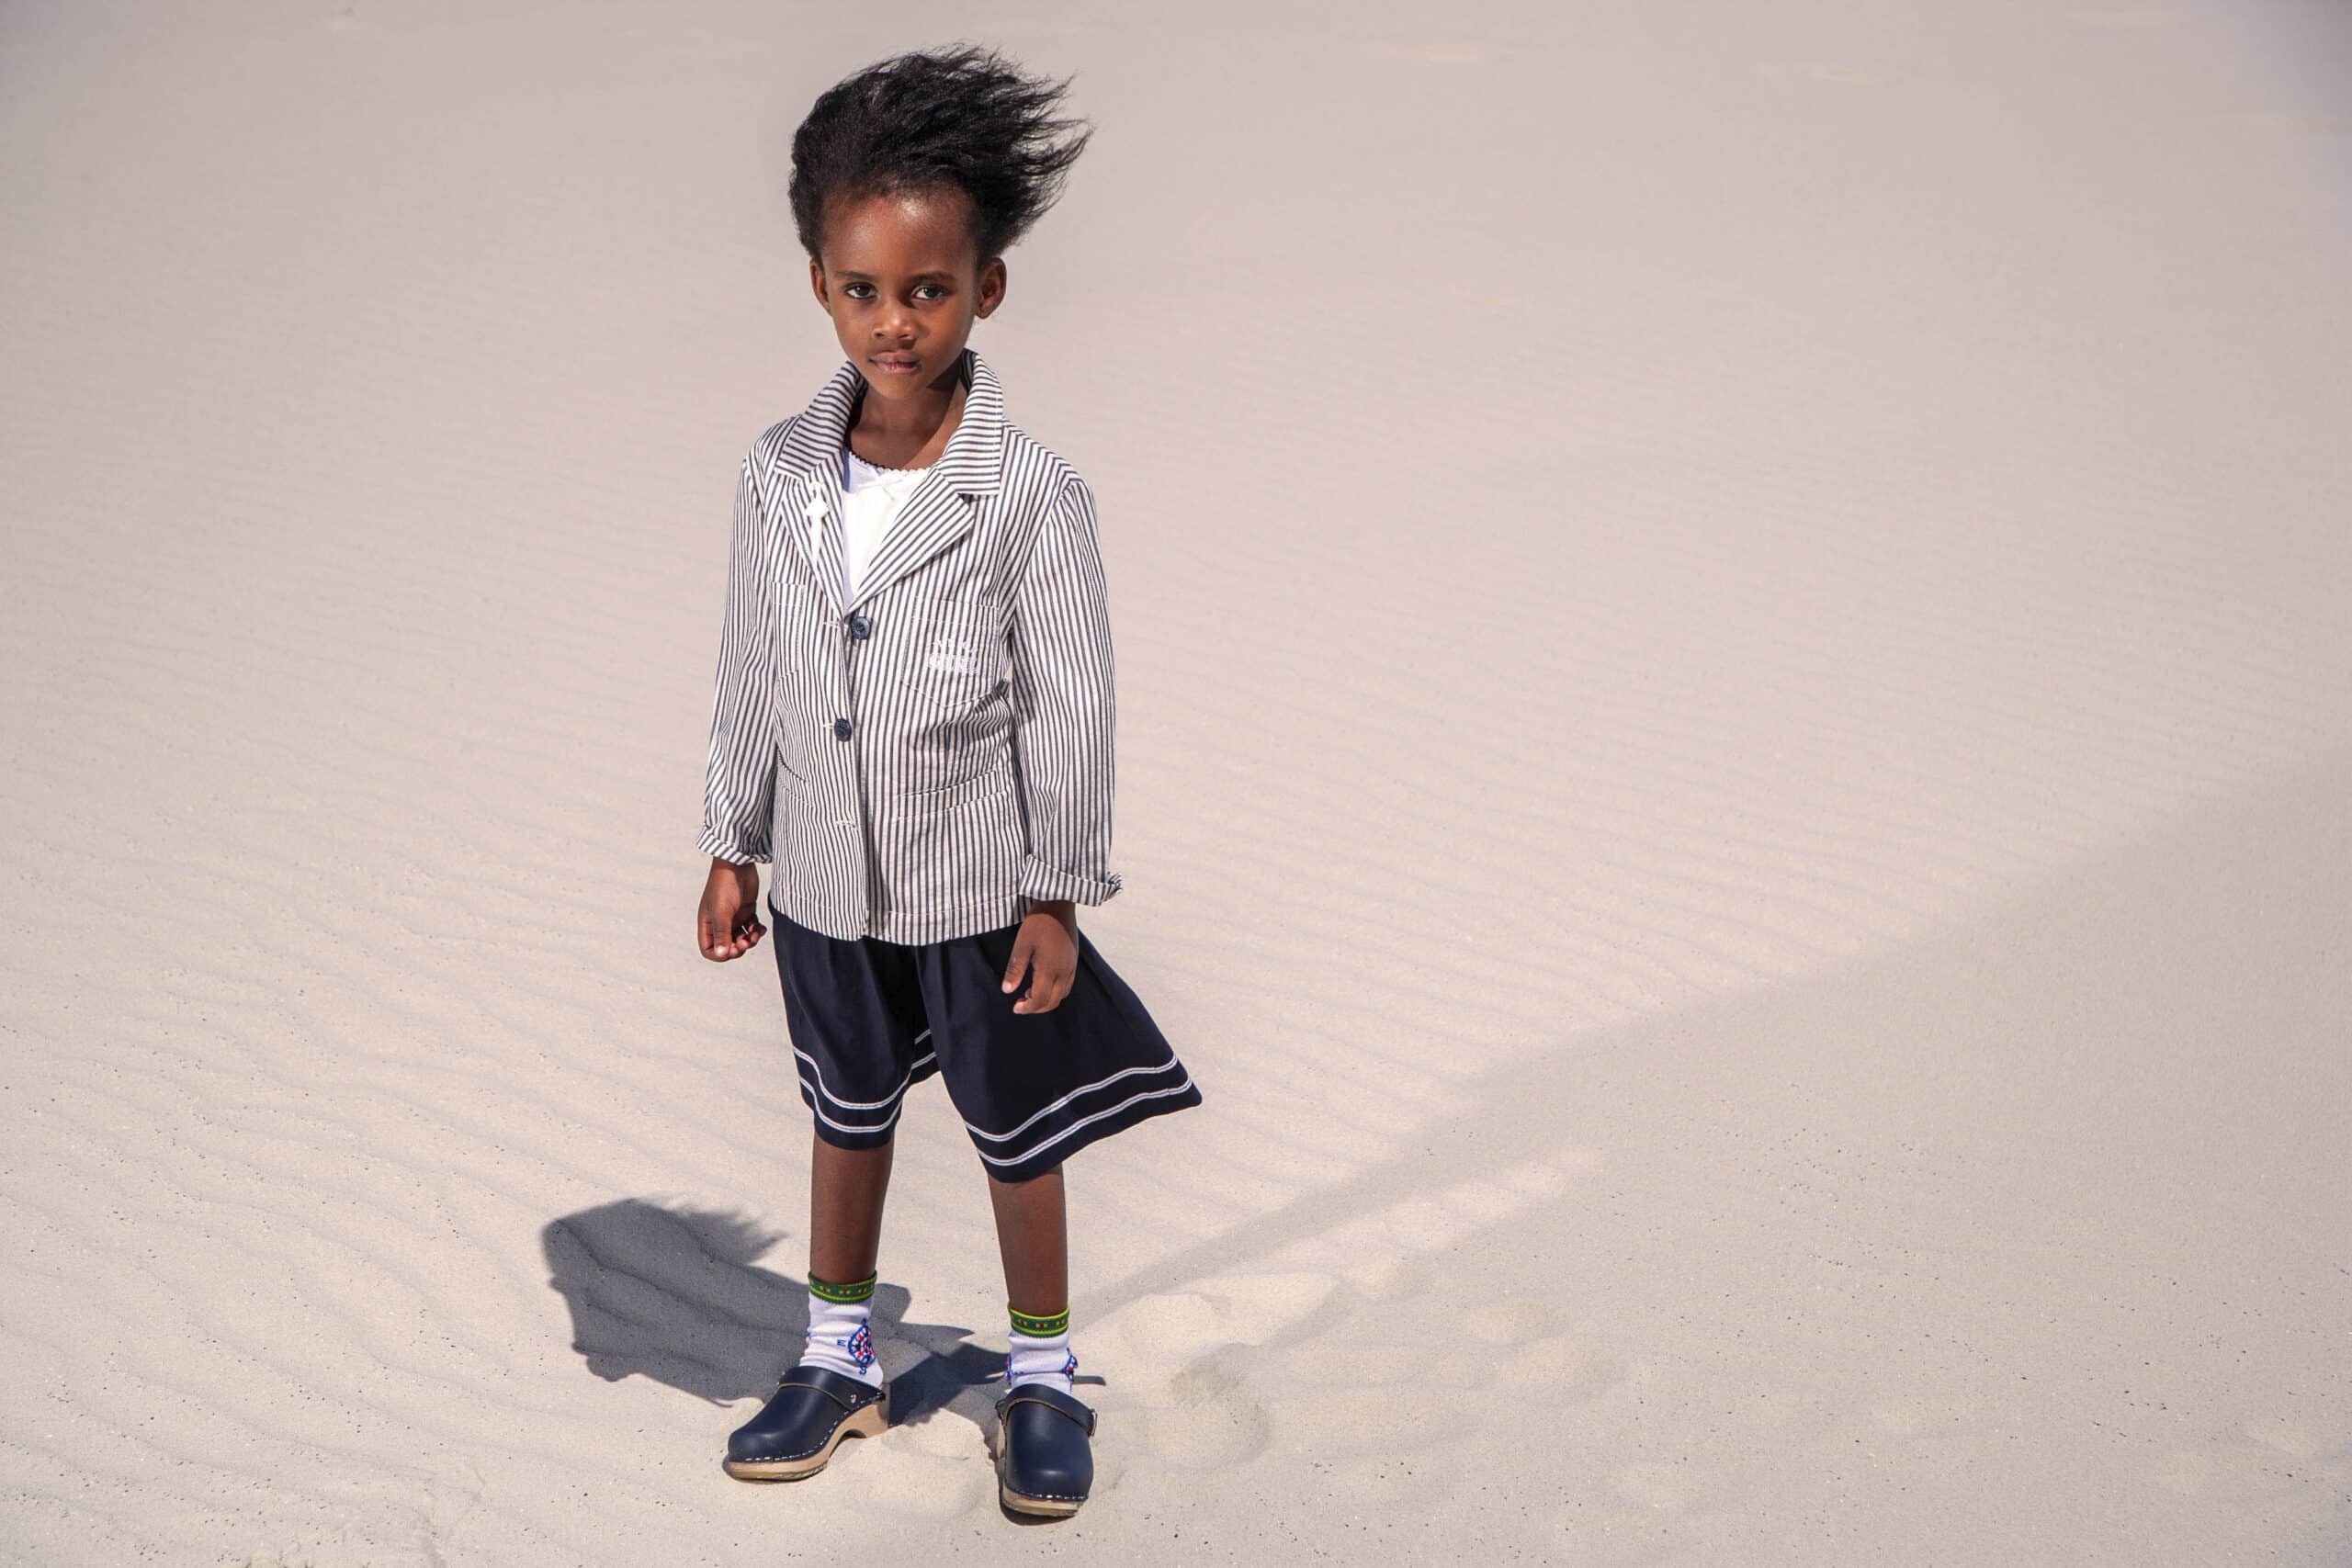 Ein kleines Kind steht auf einem Sandboden. Es trägt einen übergroßen gestreiften Blazer und Shorts und hat vom Wind zerzauste Haare. © Fotografie Tomas Rodriguez